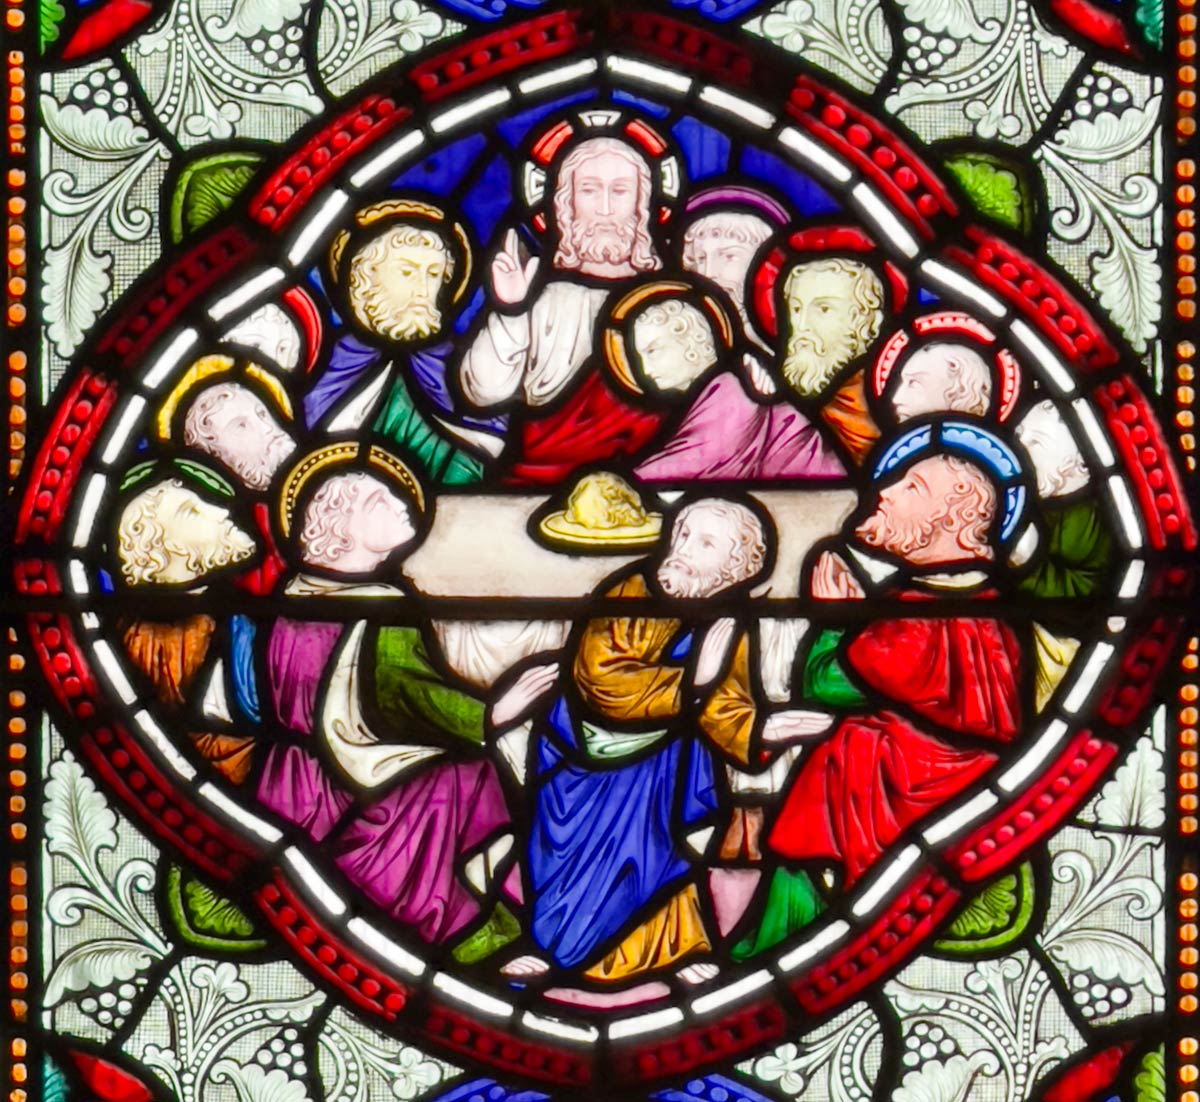 كاتدرائية هيريفورد ، زجاج ملون للمسيح مع تلاميذه في العشاء الأخير